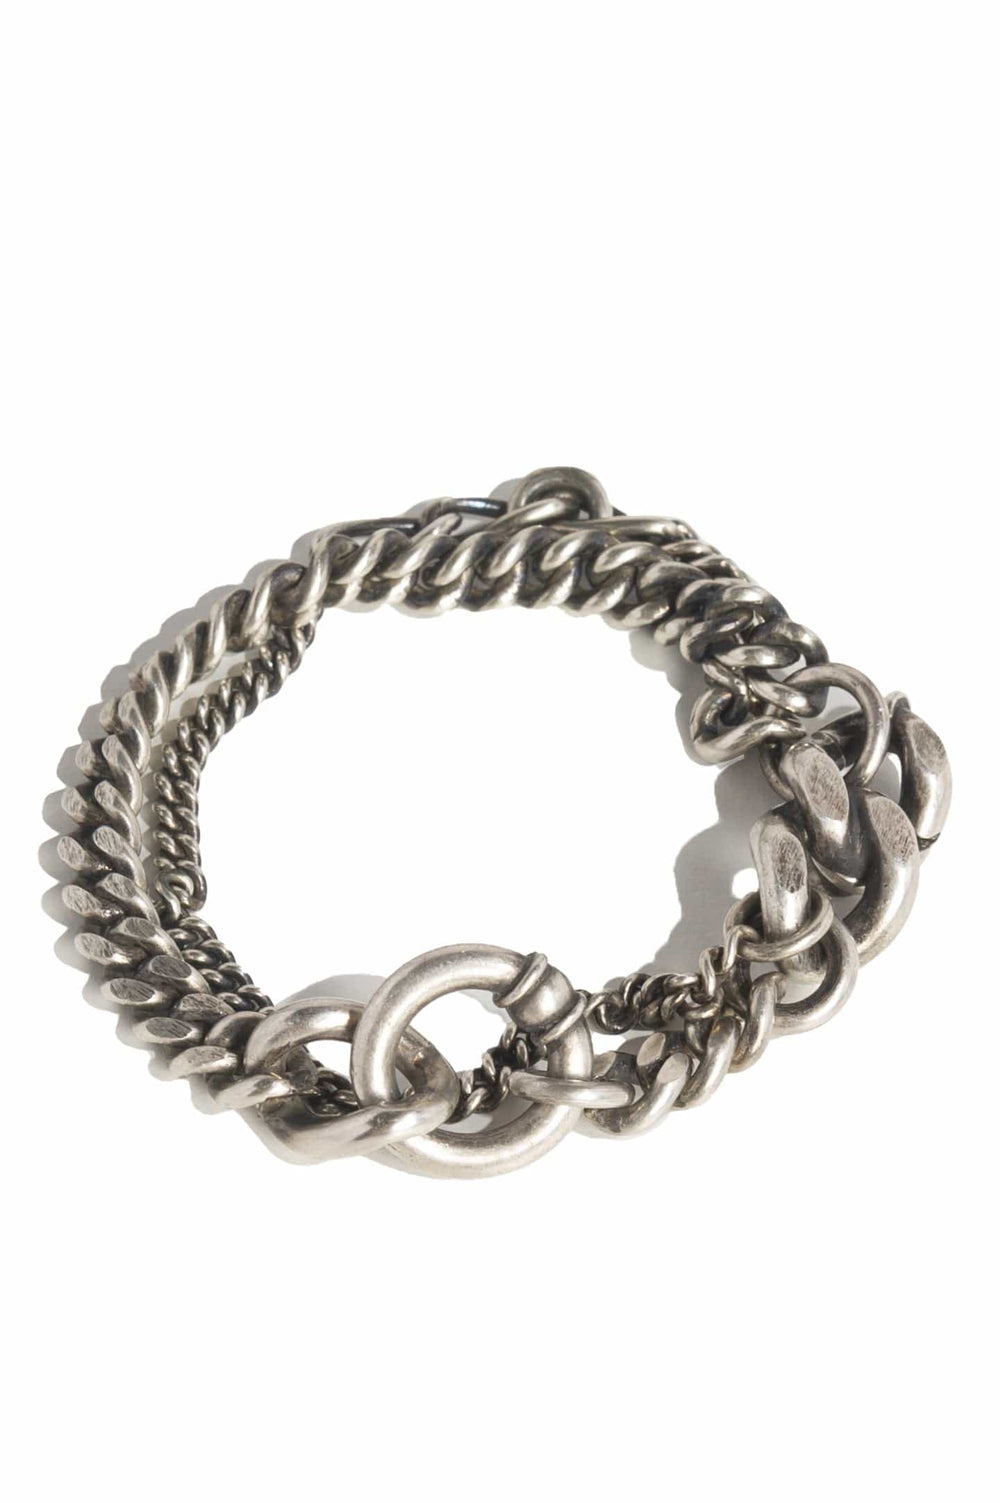 Werkstatt München Silver Two Chains Ring Bracelet – Antidote